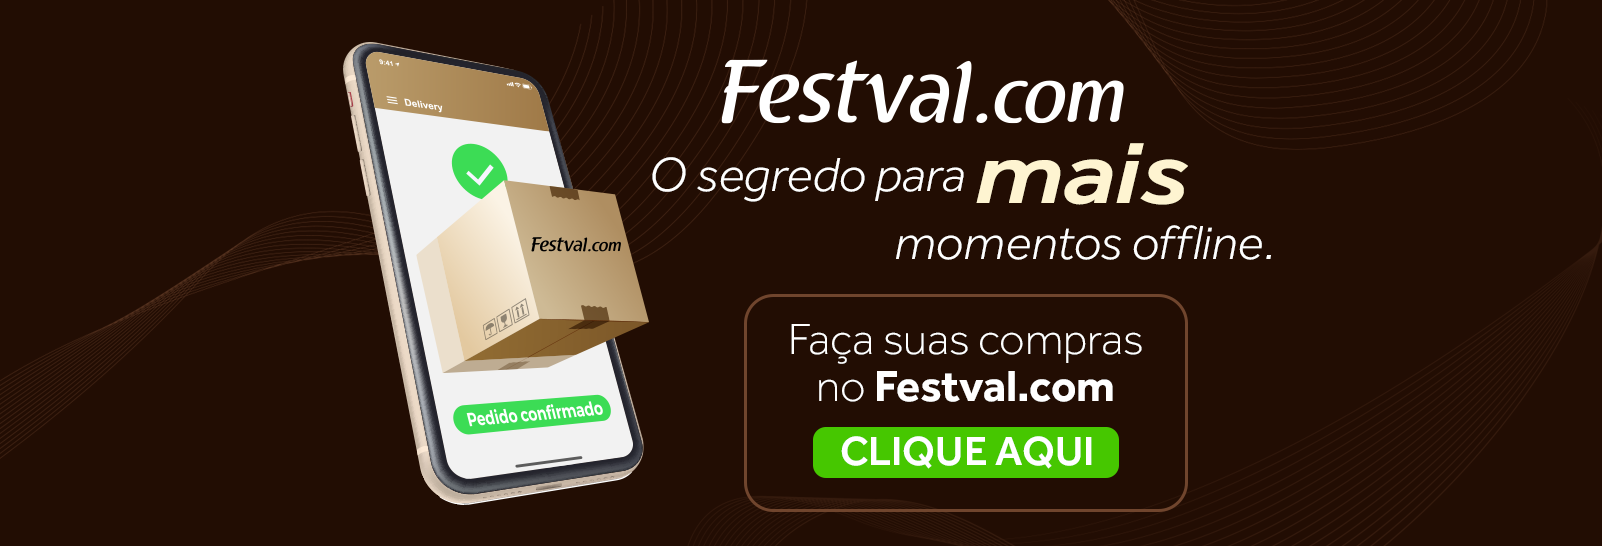 Festval.com